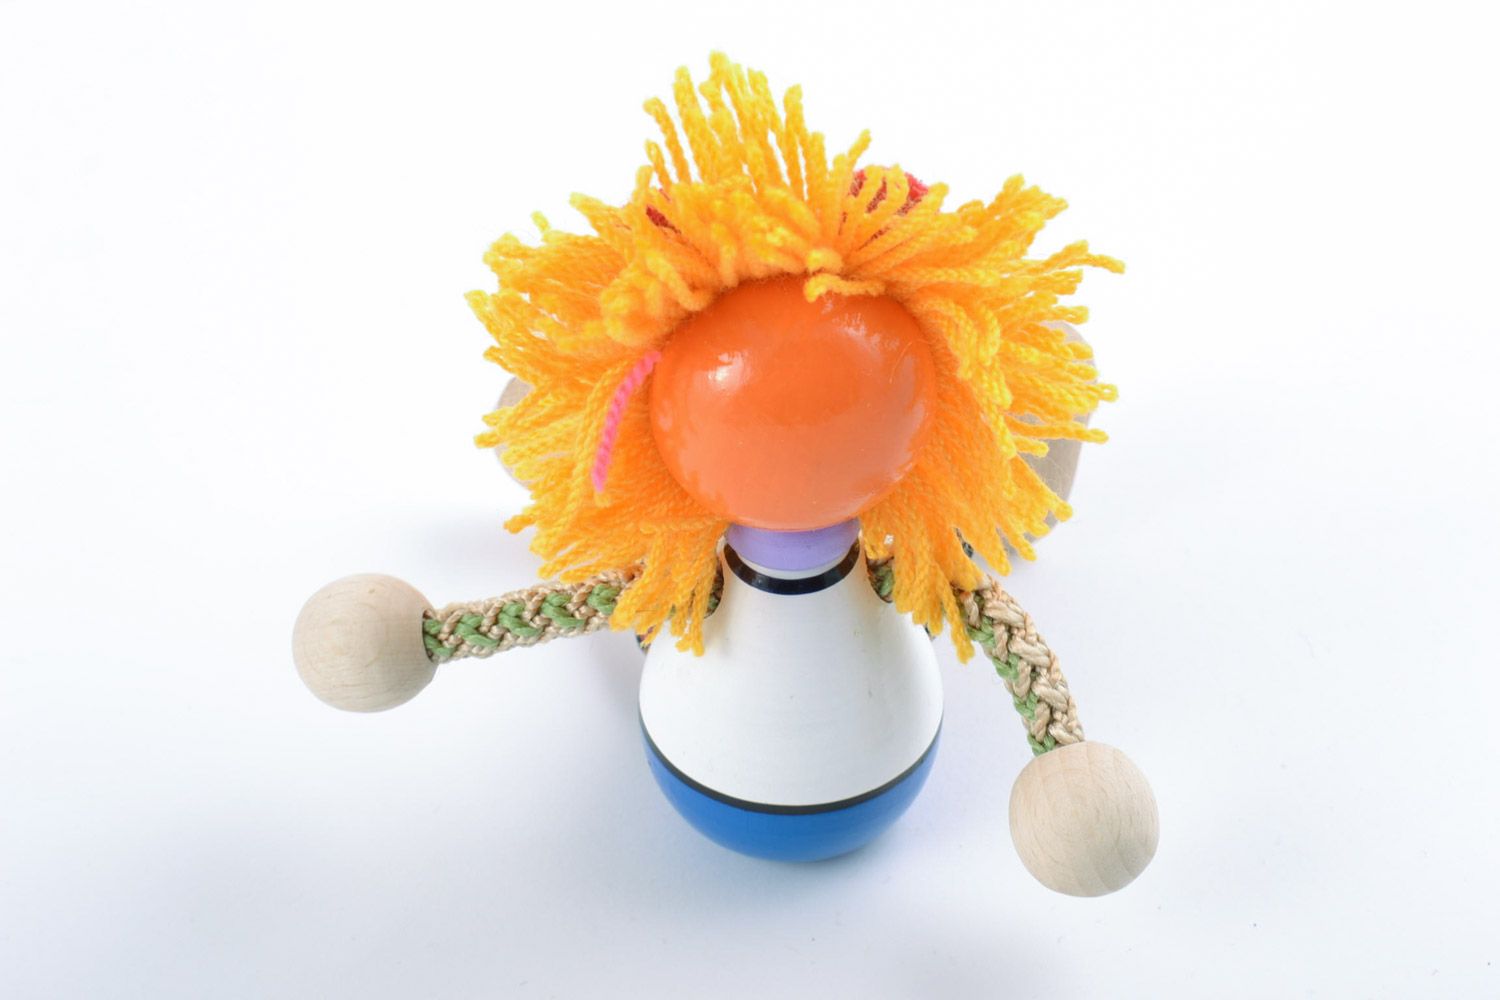 Авторская деревянная игрушка из бука расписанная красками вручную Солнечный лев фото 4